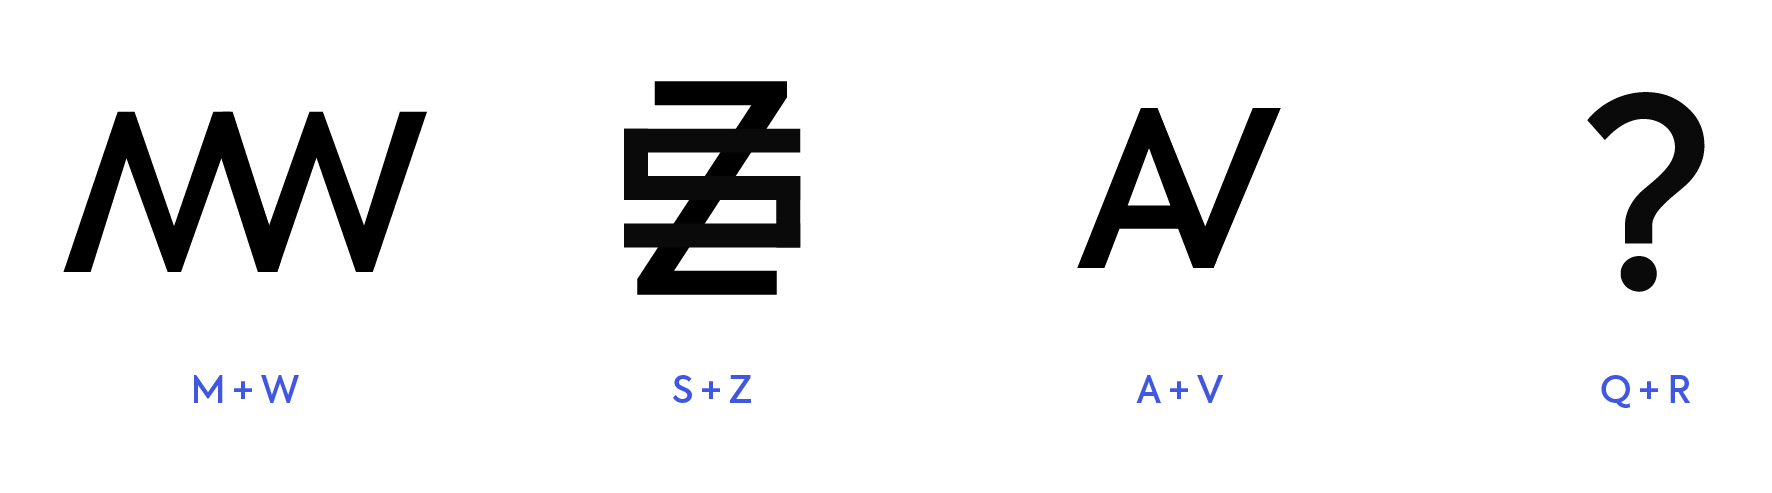 Letras simétricas en forma